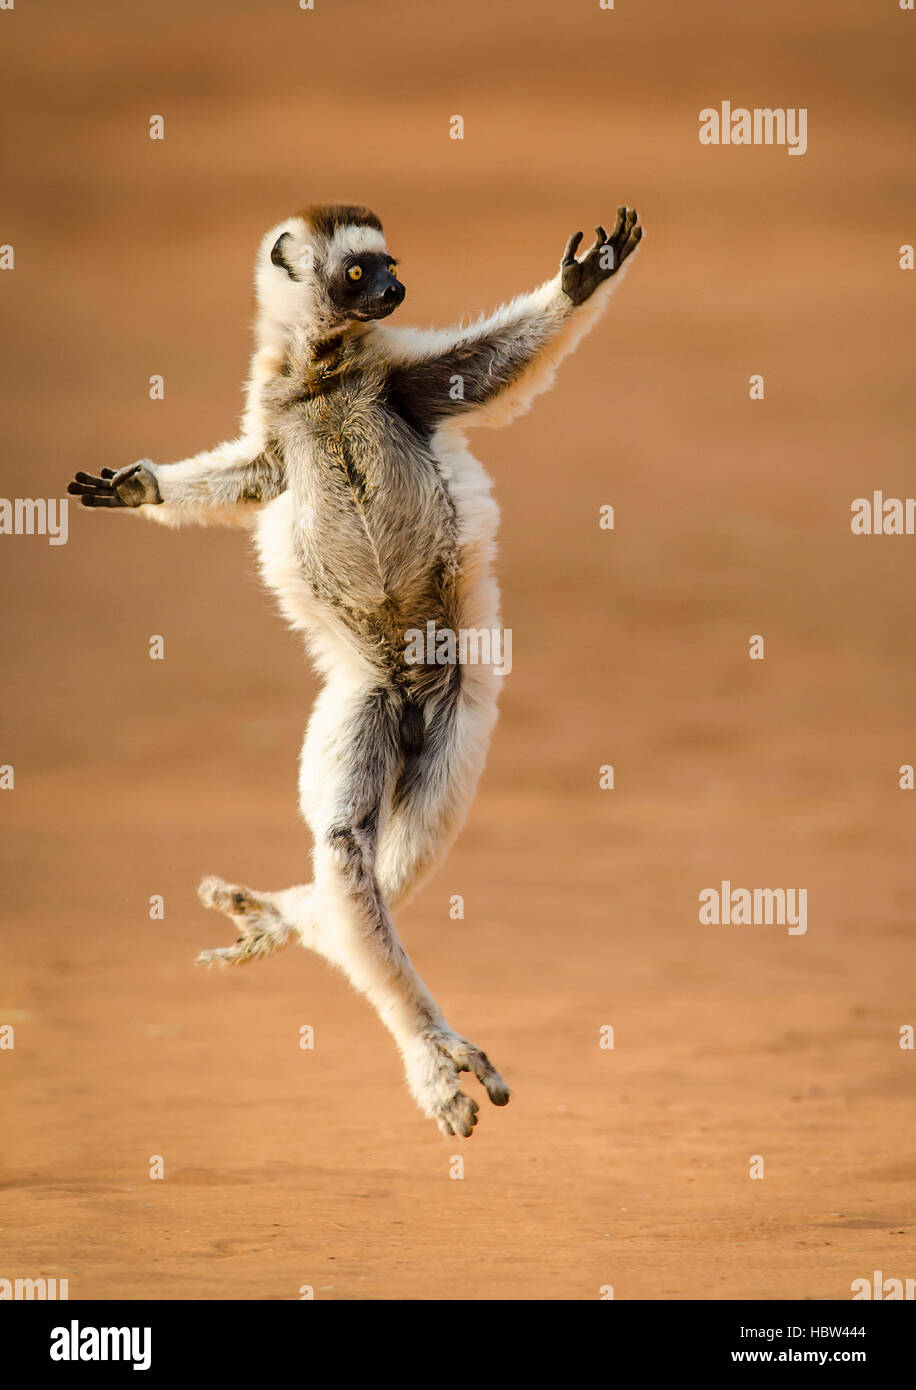 El baile de Verreaux (Propithecus verreauxi Sifaka) bailando Foto de stock